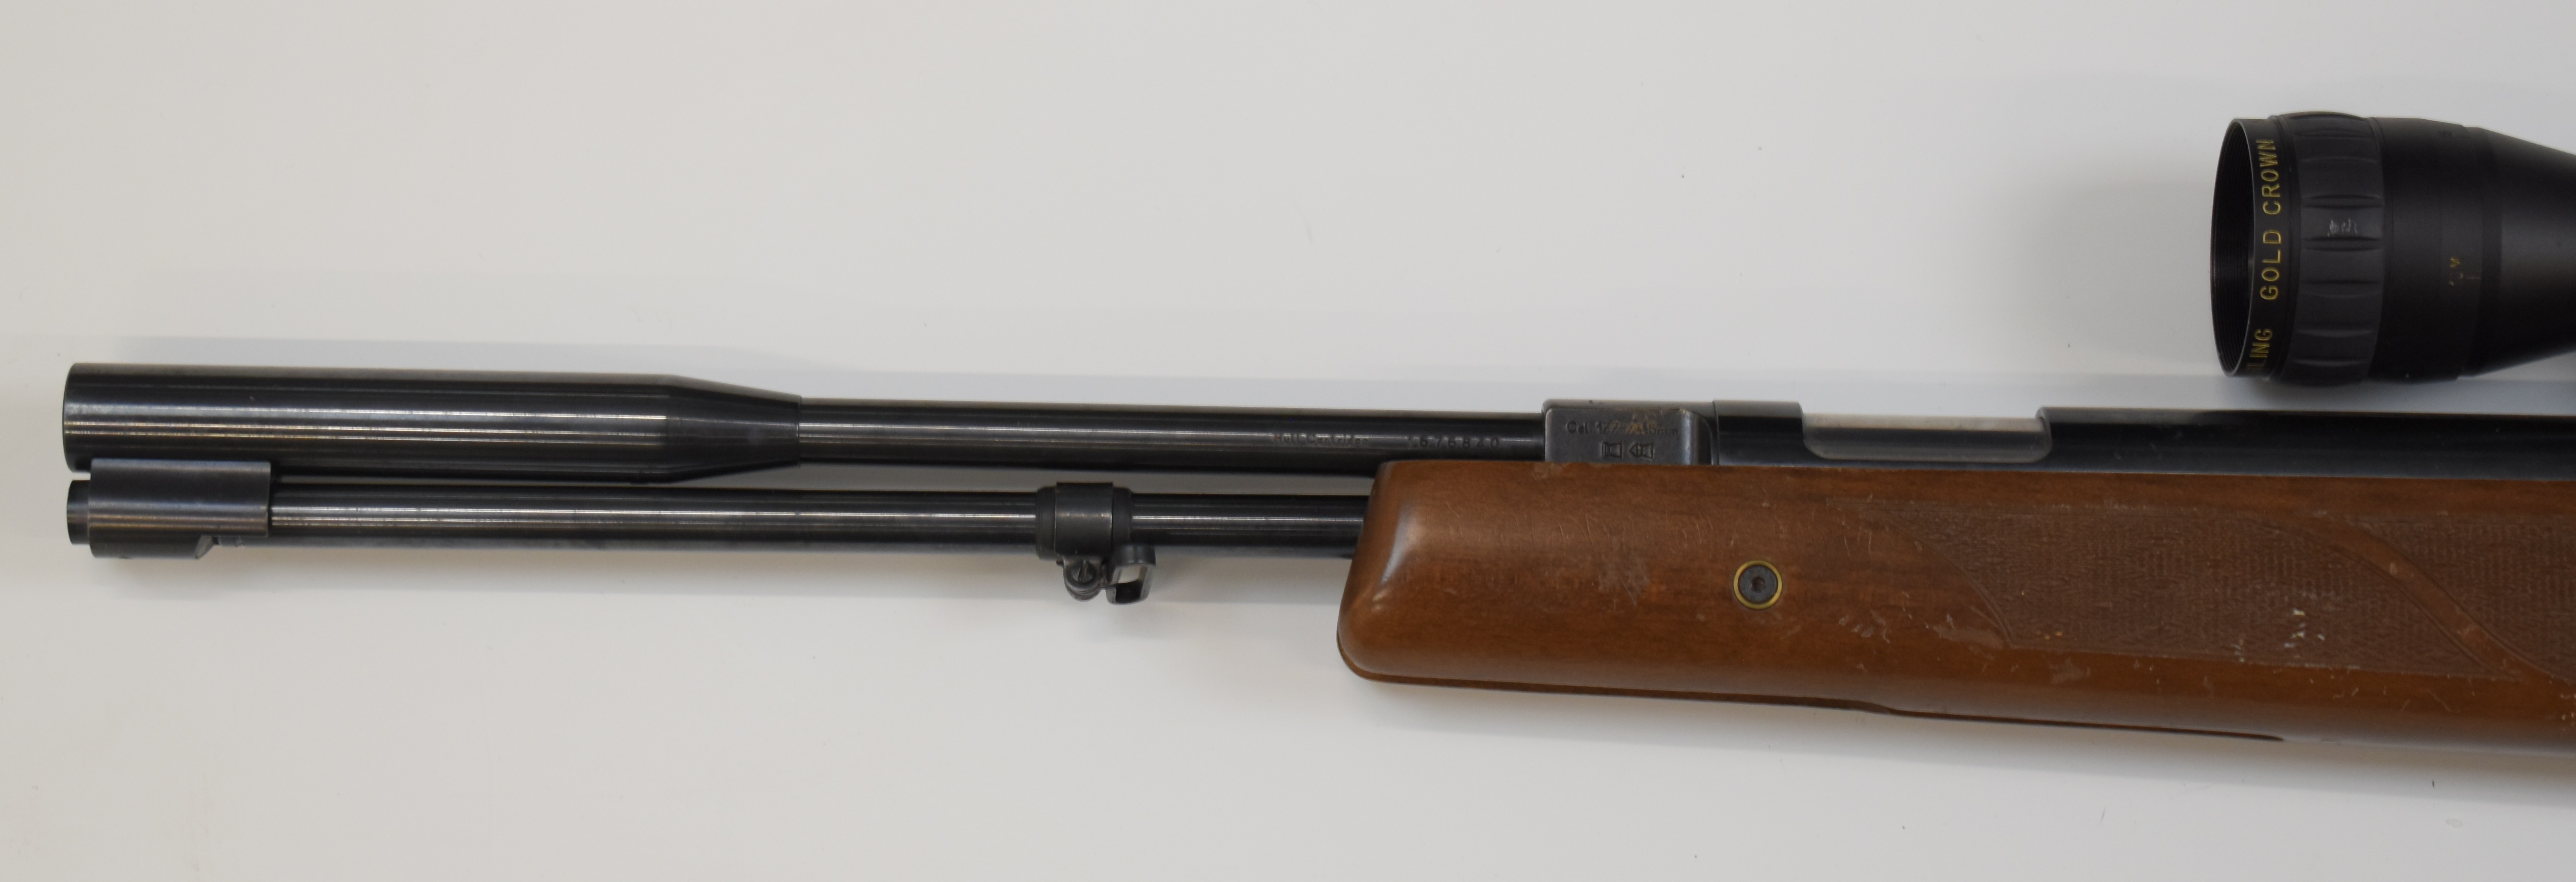 Weihrauch HW97K .177 underlever air rifle with chequered semi-pistol grip, raised cheek piece, sling - Image 9 of 10